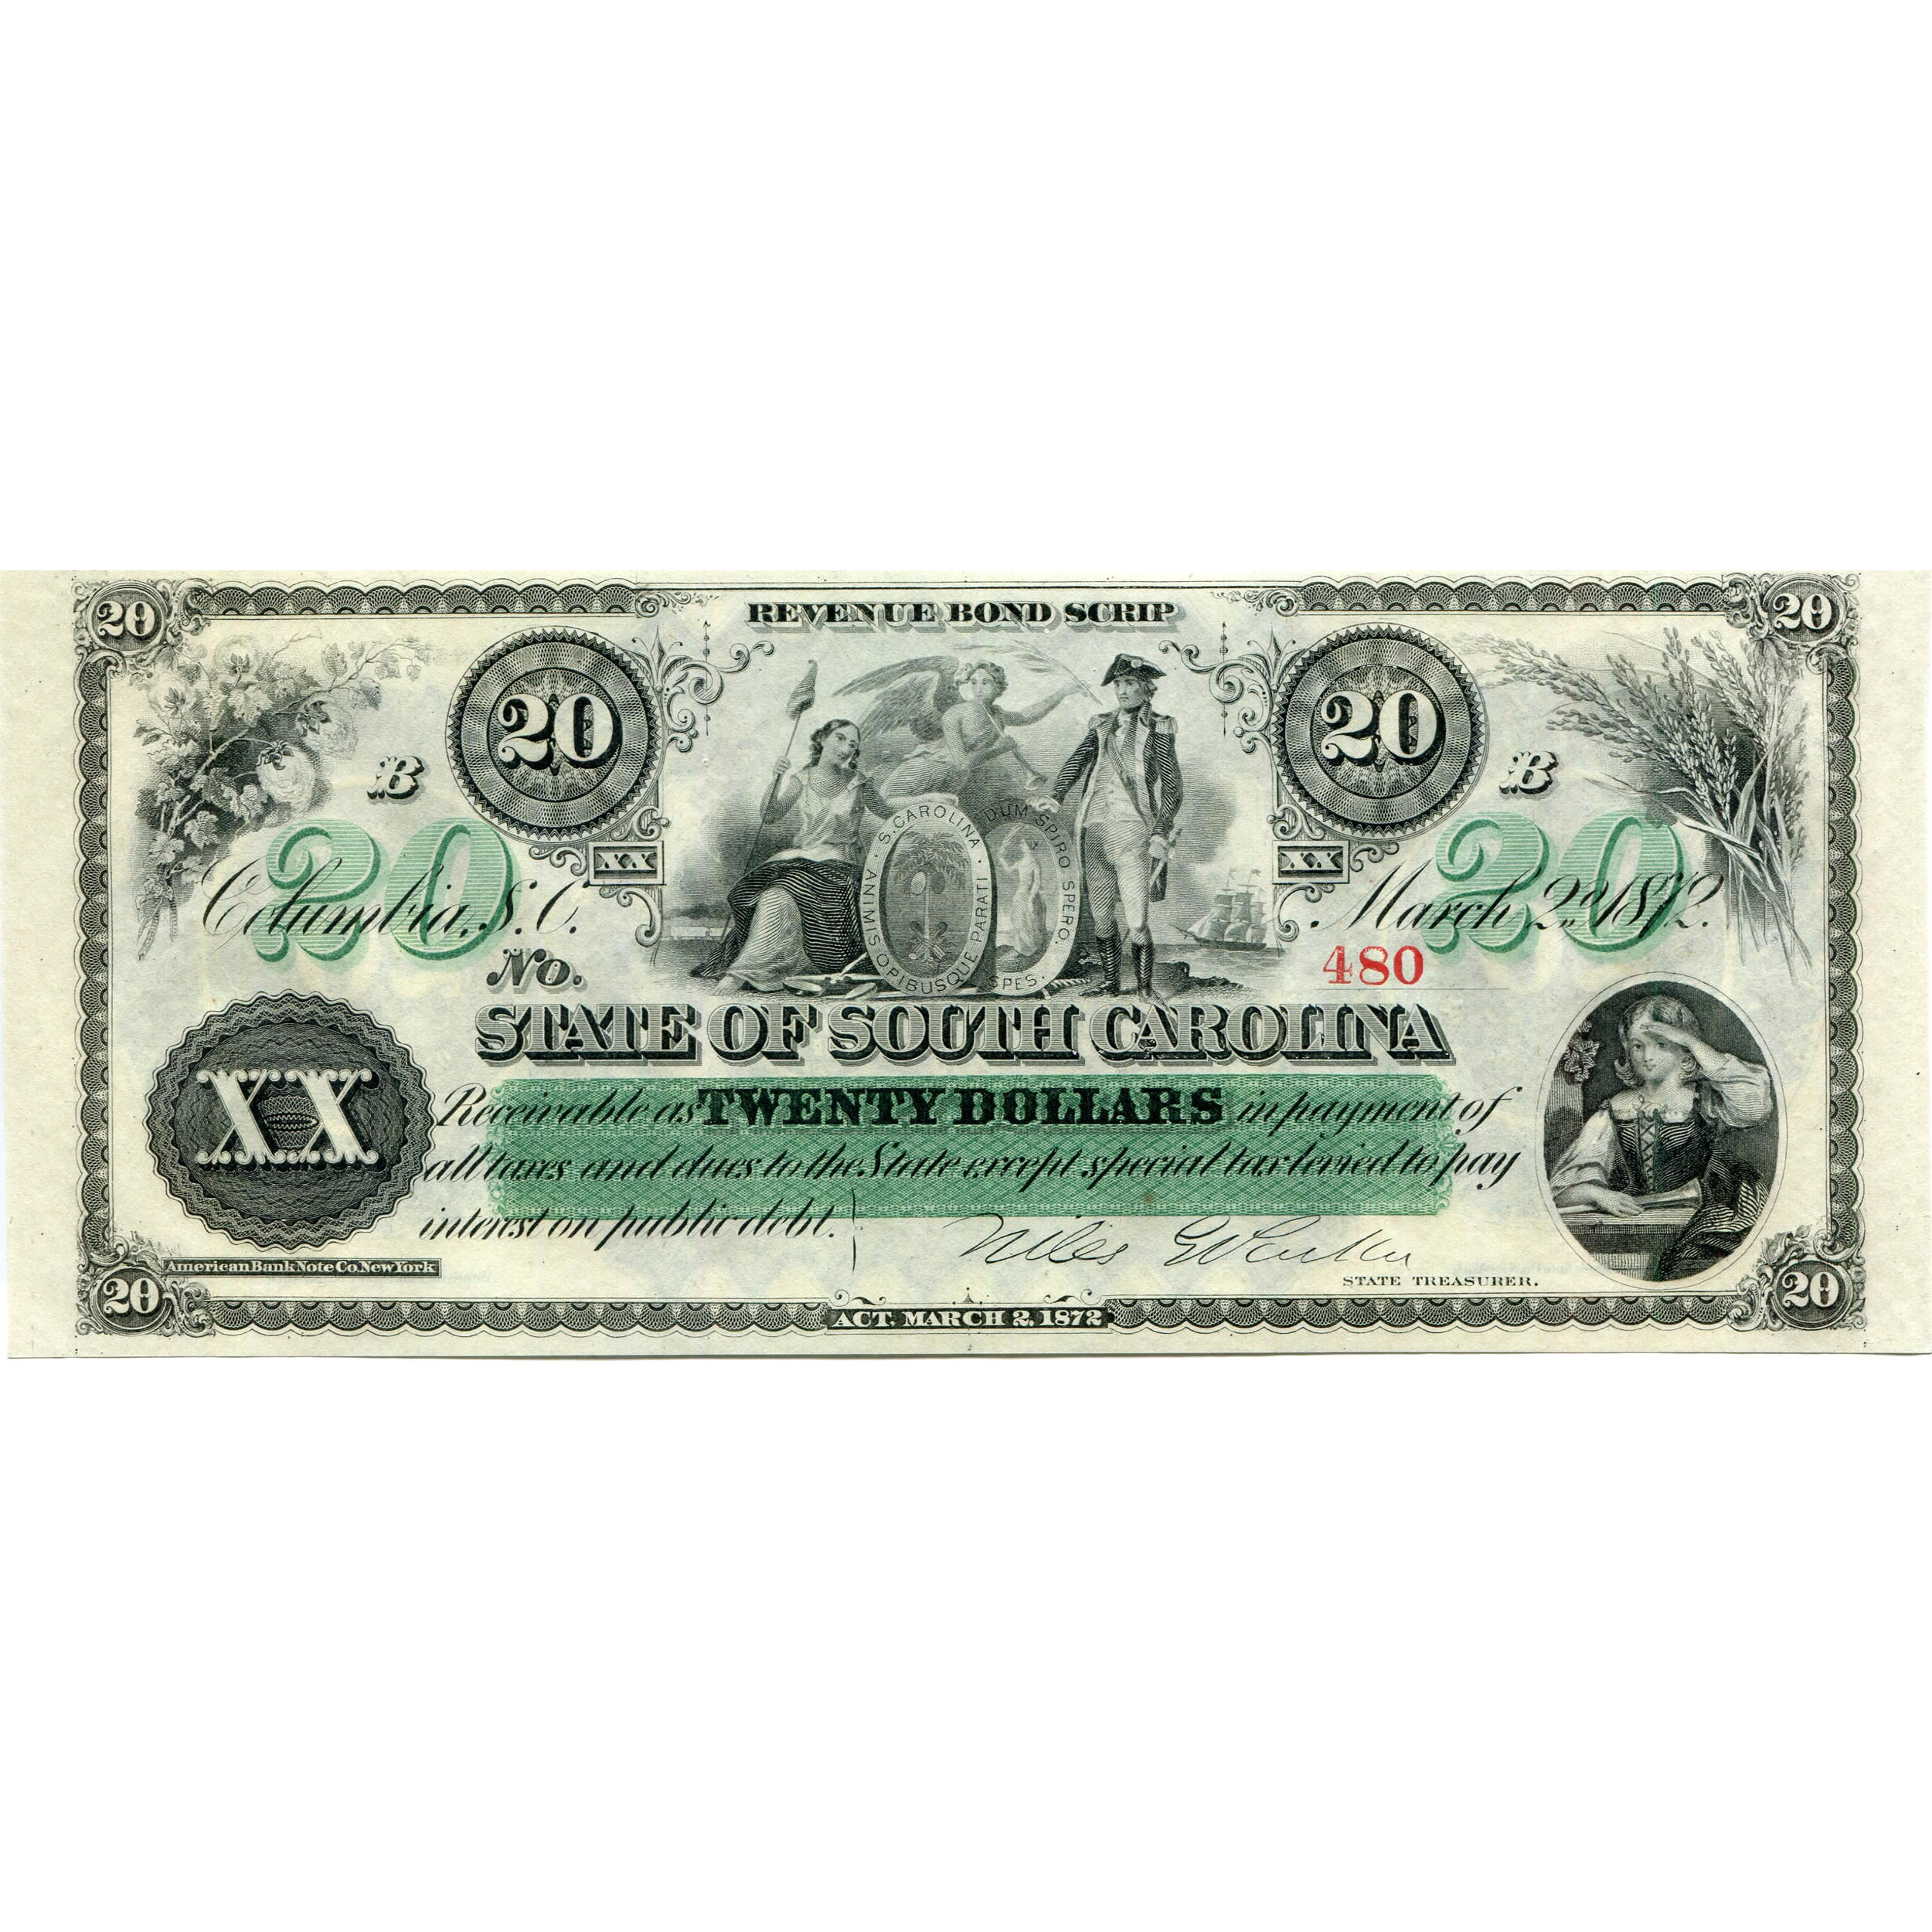 South Carolina 1872 $20 Revenue Bond Scrip CR-7 CU